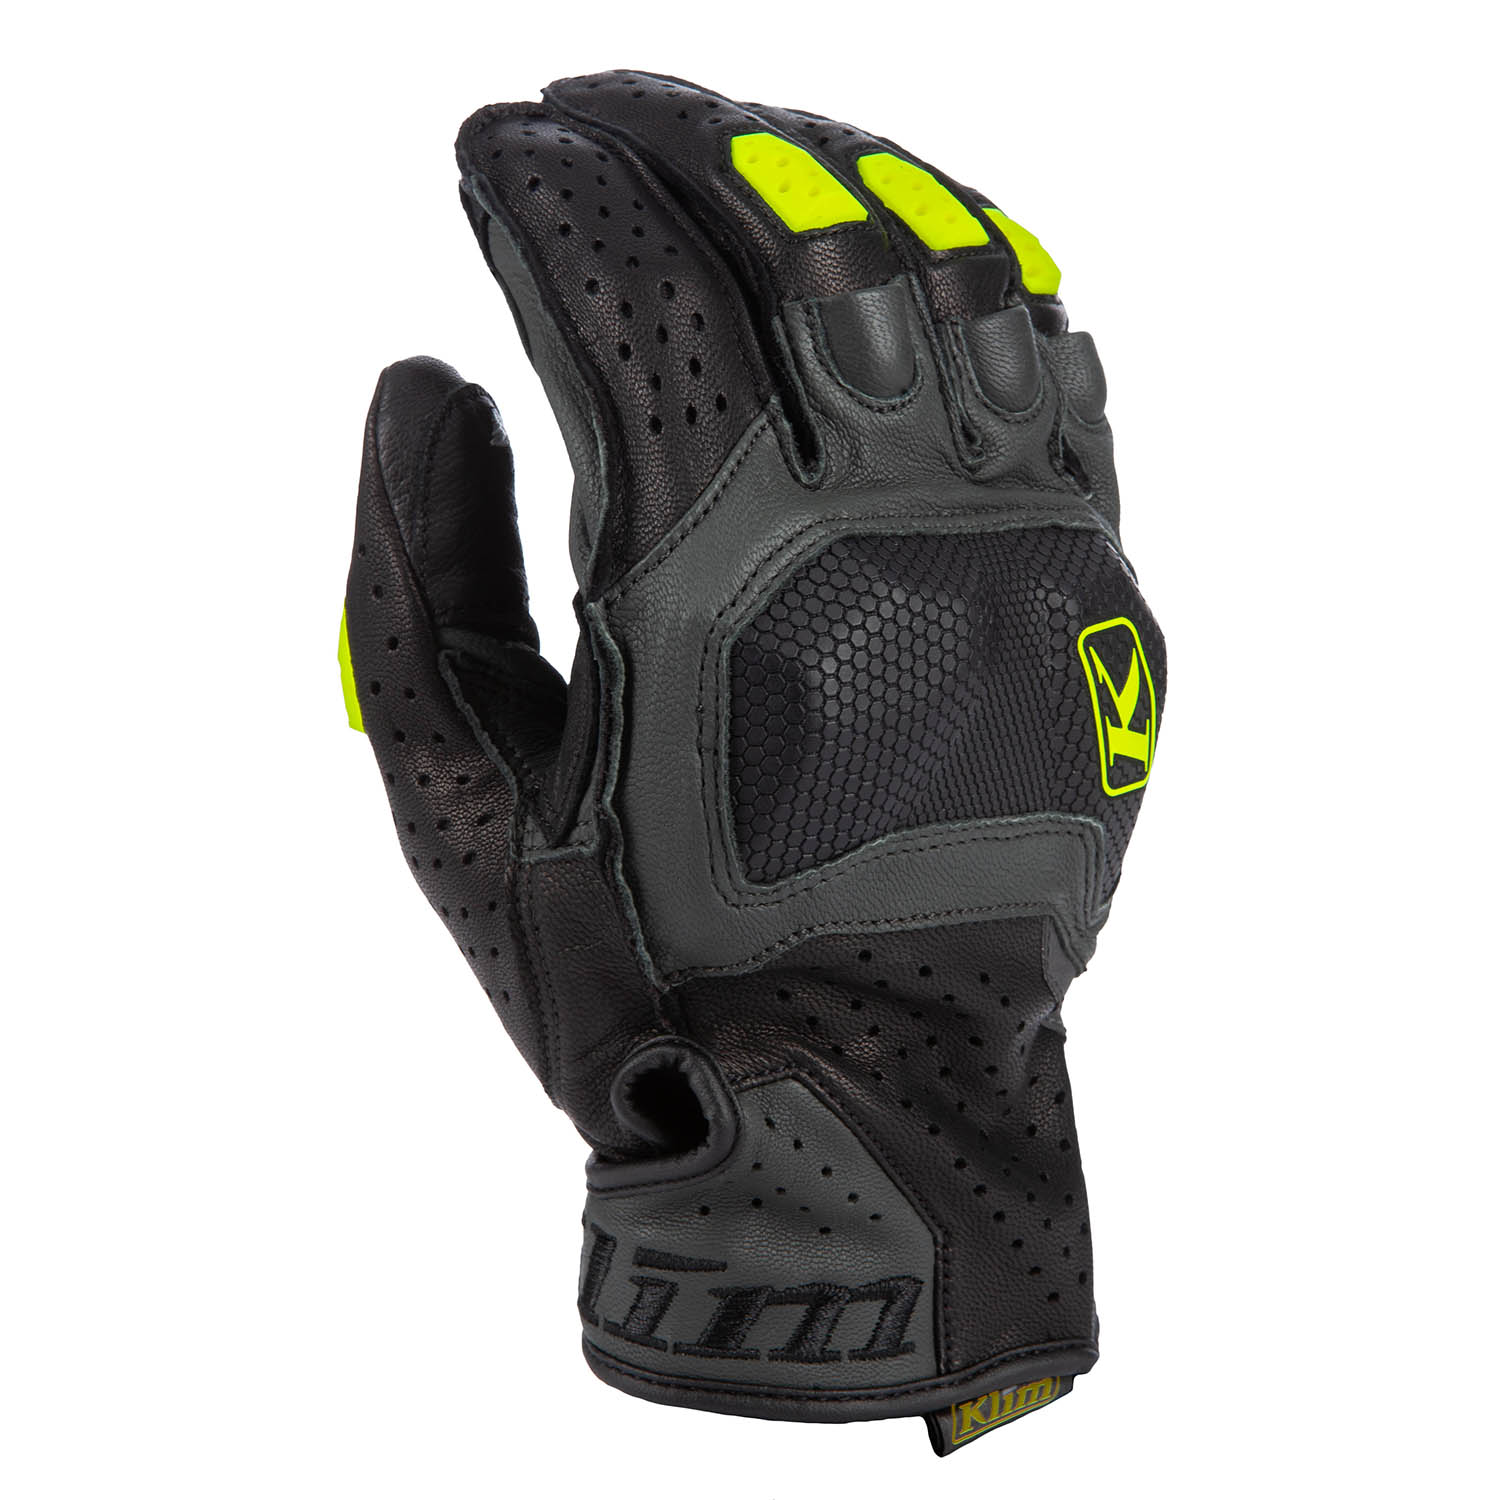 Badlands Aero Pro Short Glove SM Black - Hi-Vis